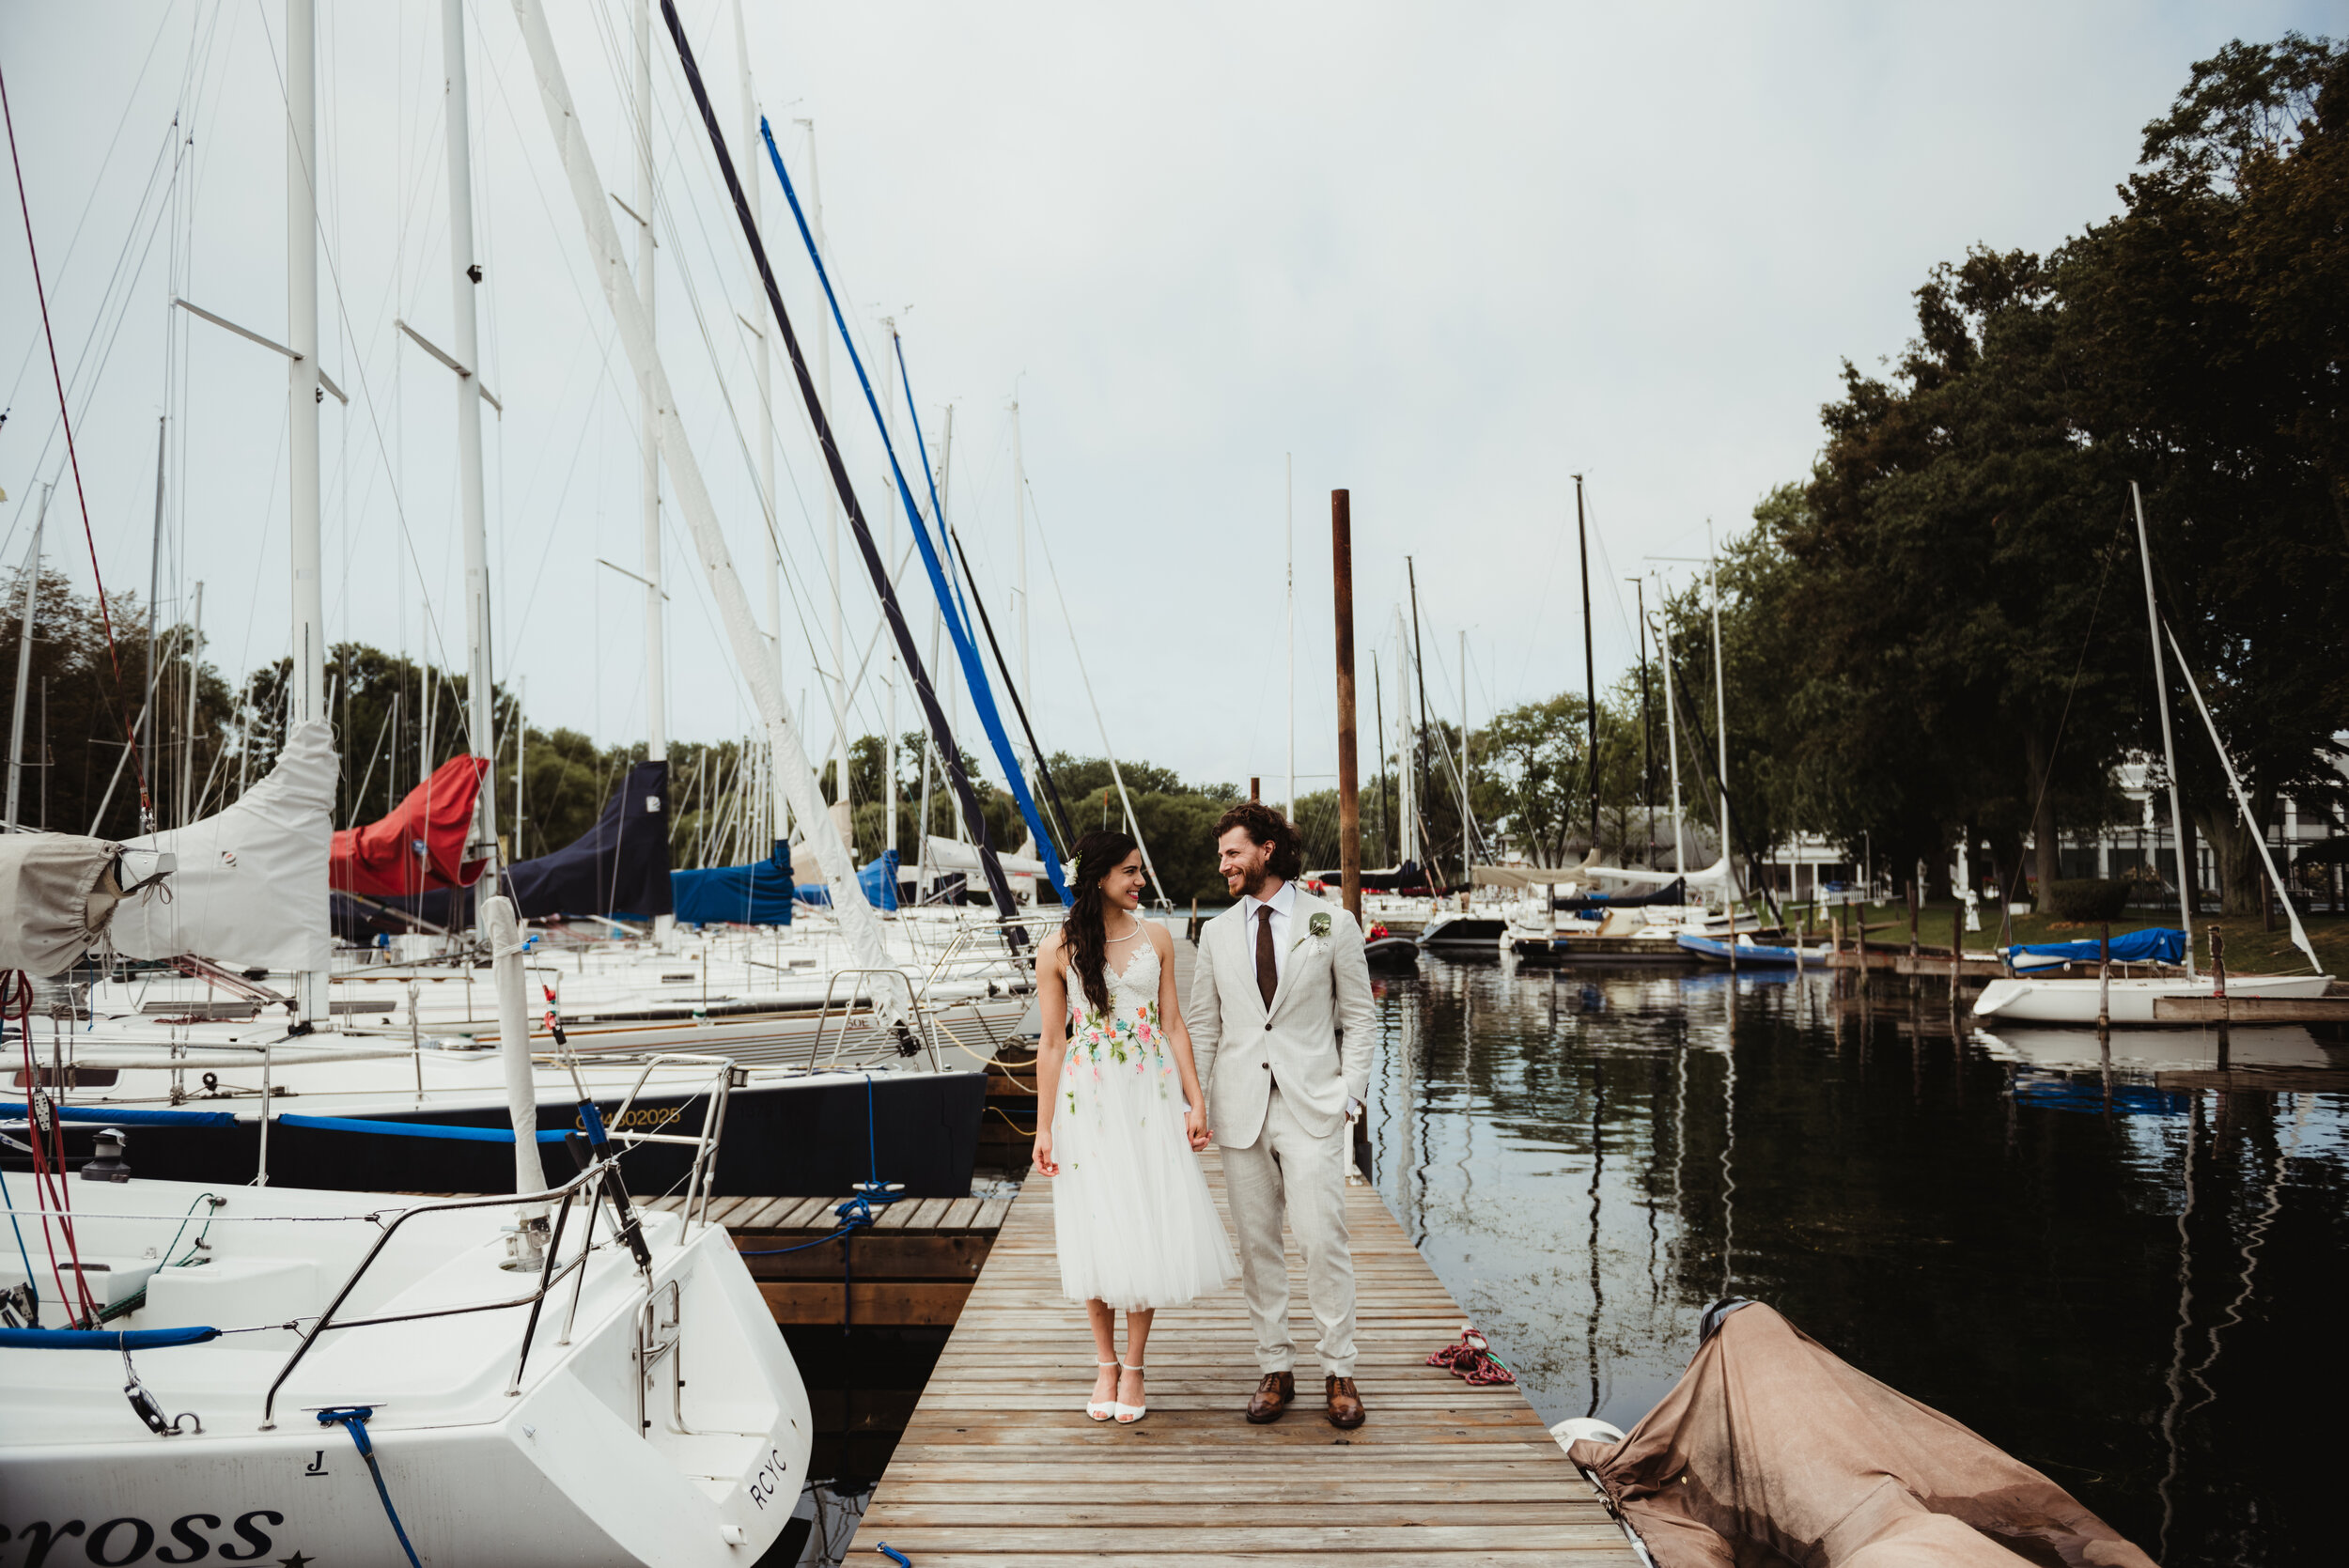 Bride and groom walking on dock